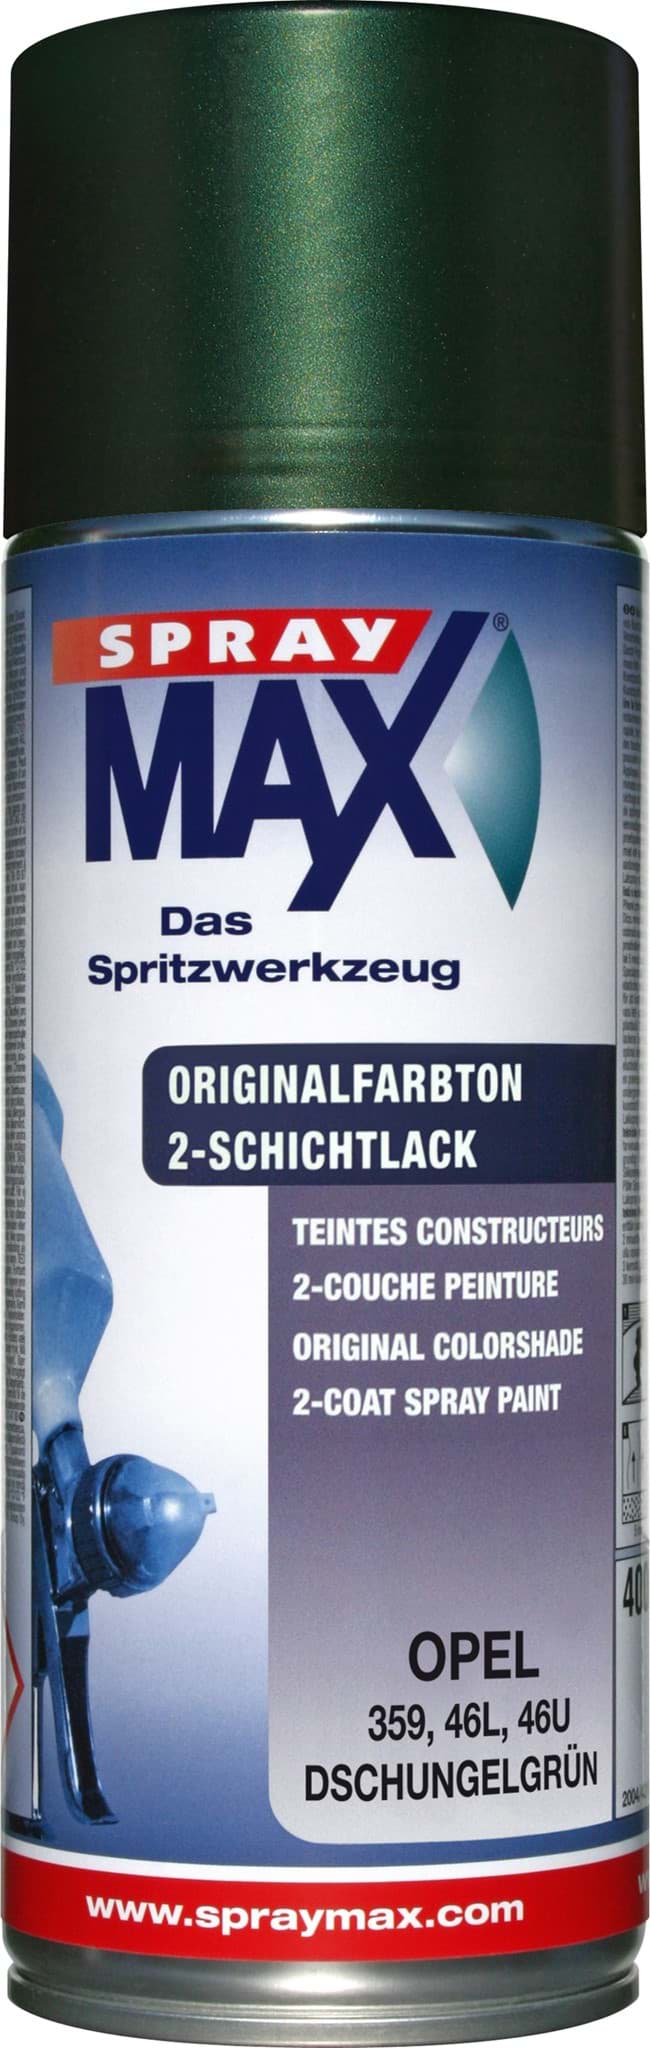 Изображение SprayMax Originalfarbton für Opel 359 dschungelgrün